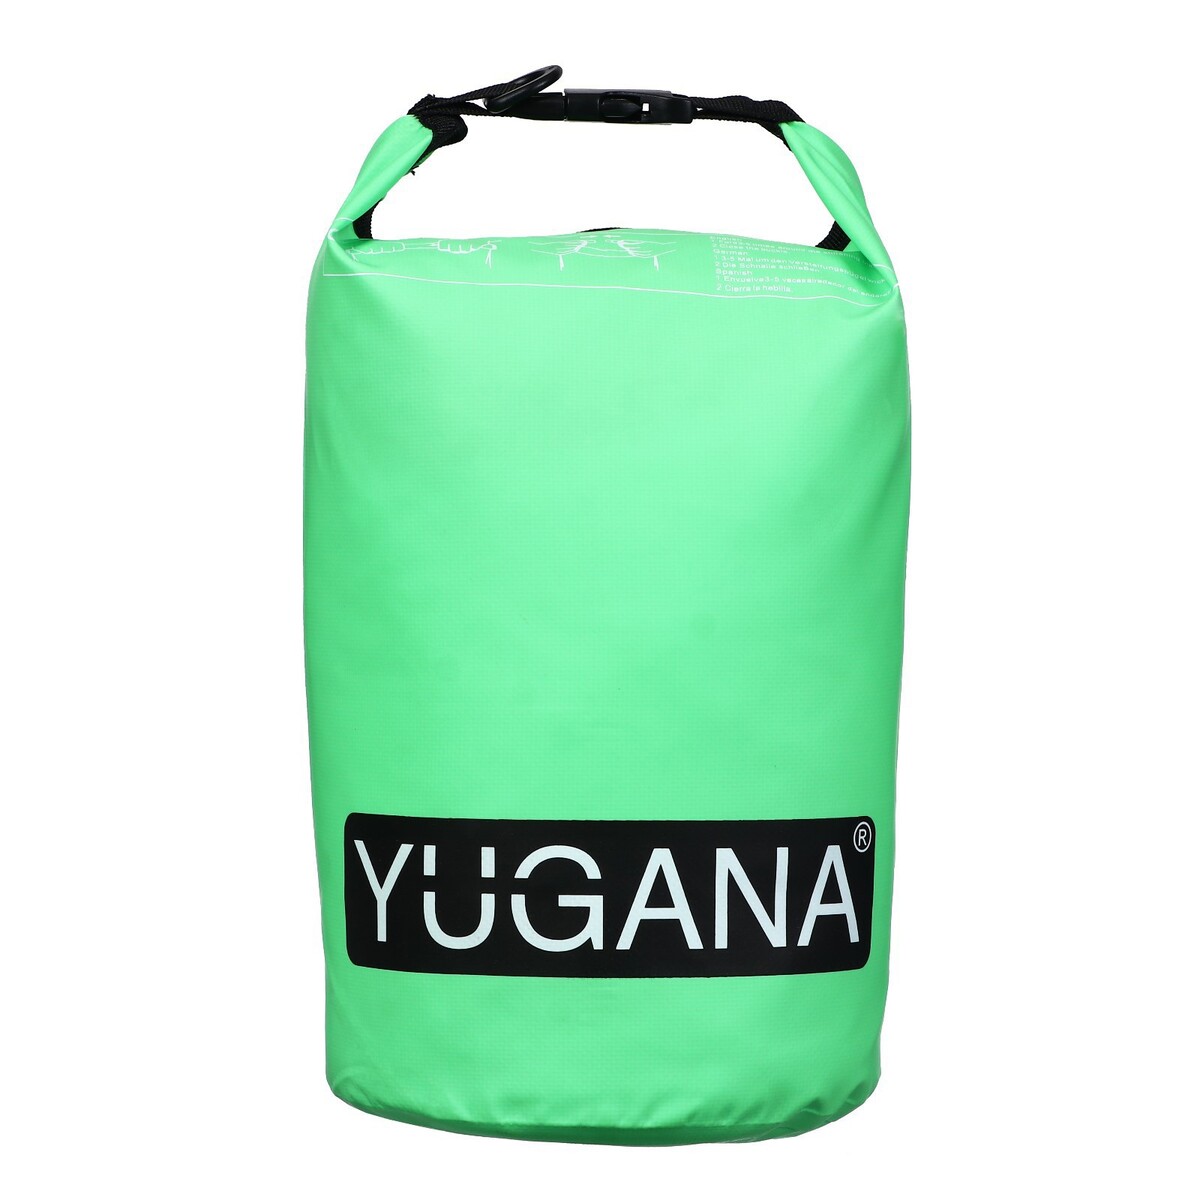 фото Гермомешок yugana, пвх, водонепроницаемый 5 литров, один ремень, зеленый